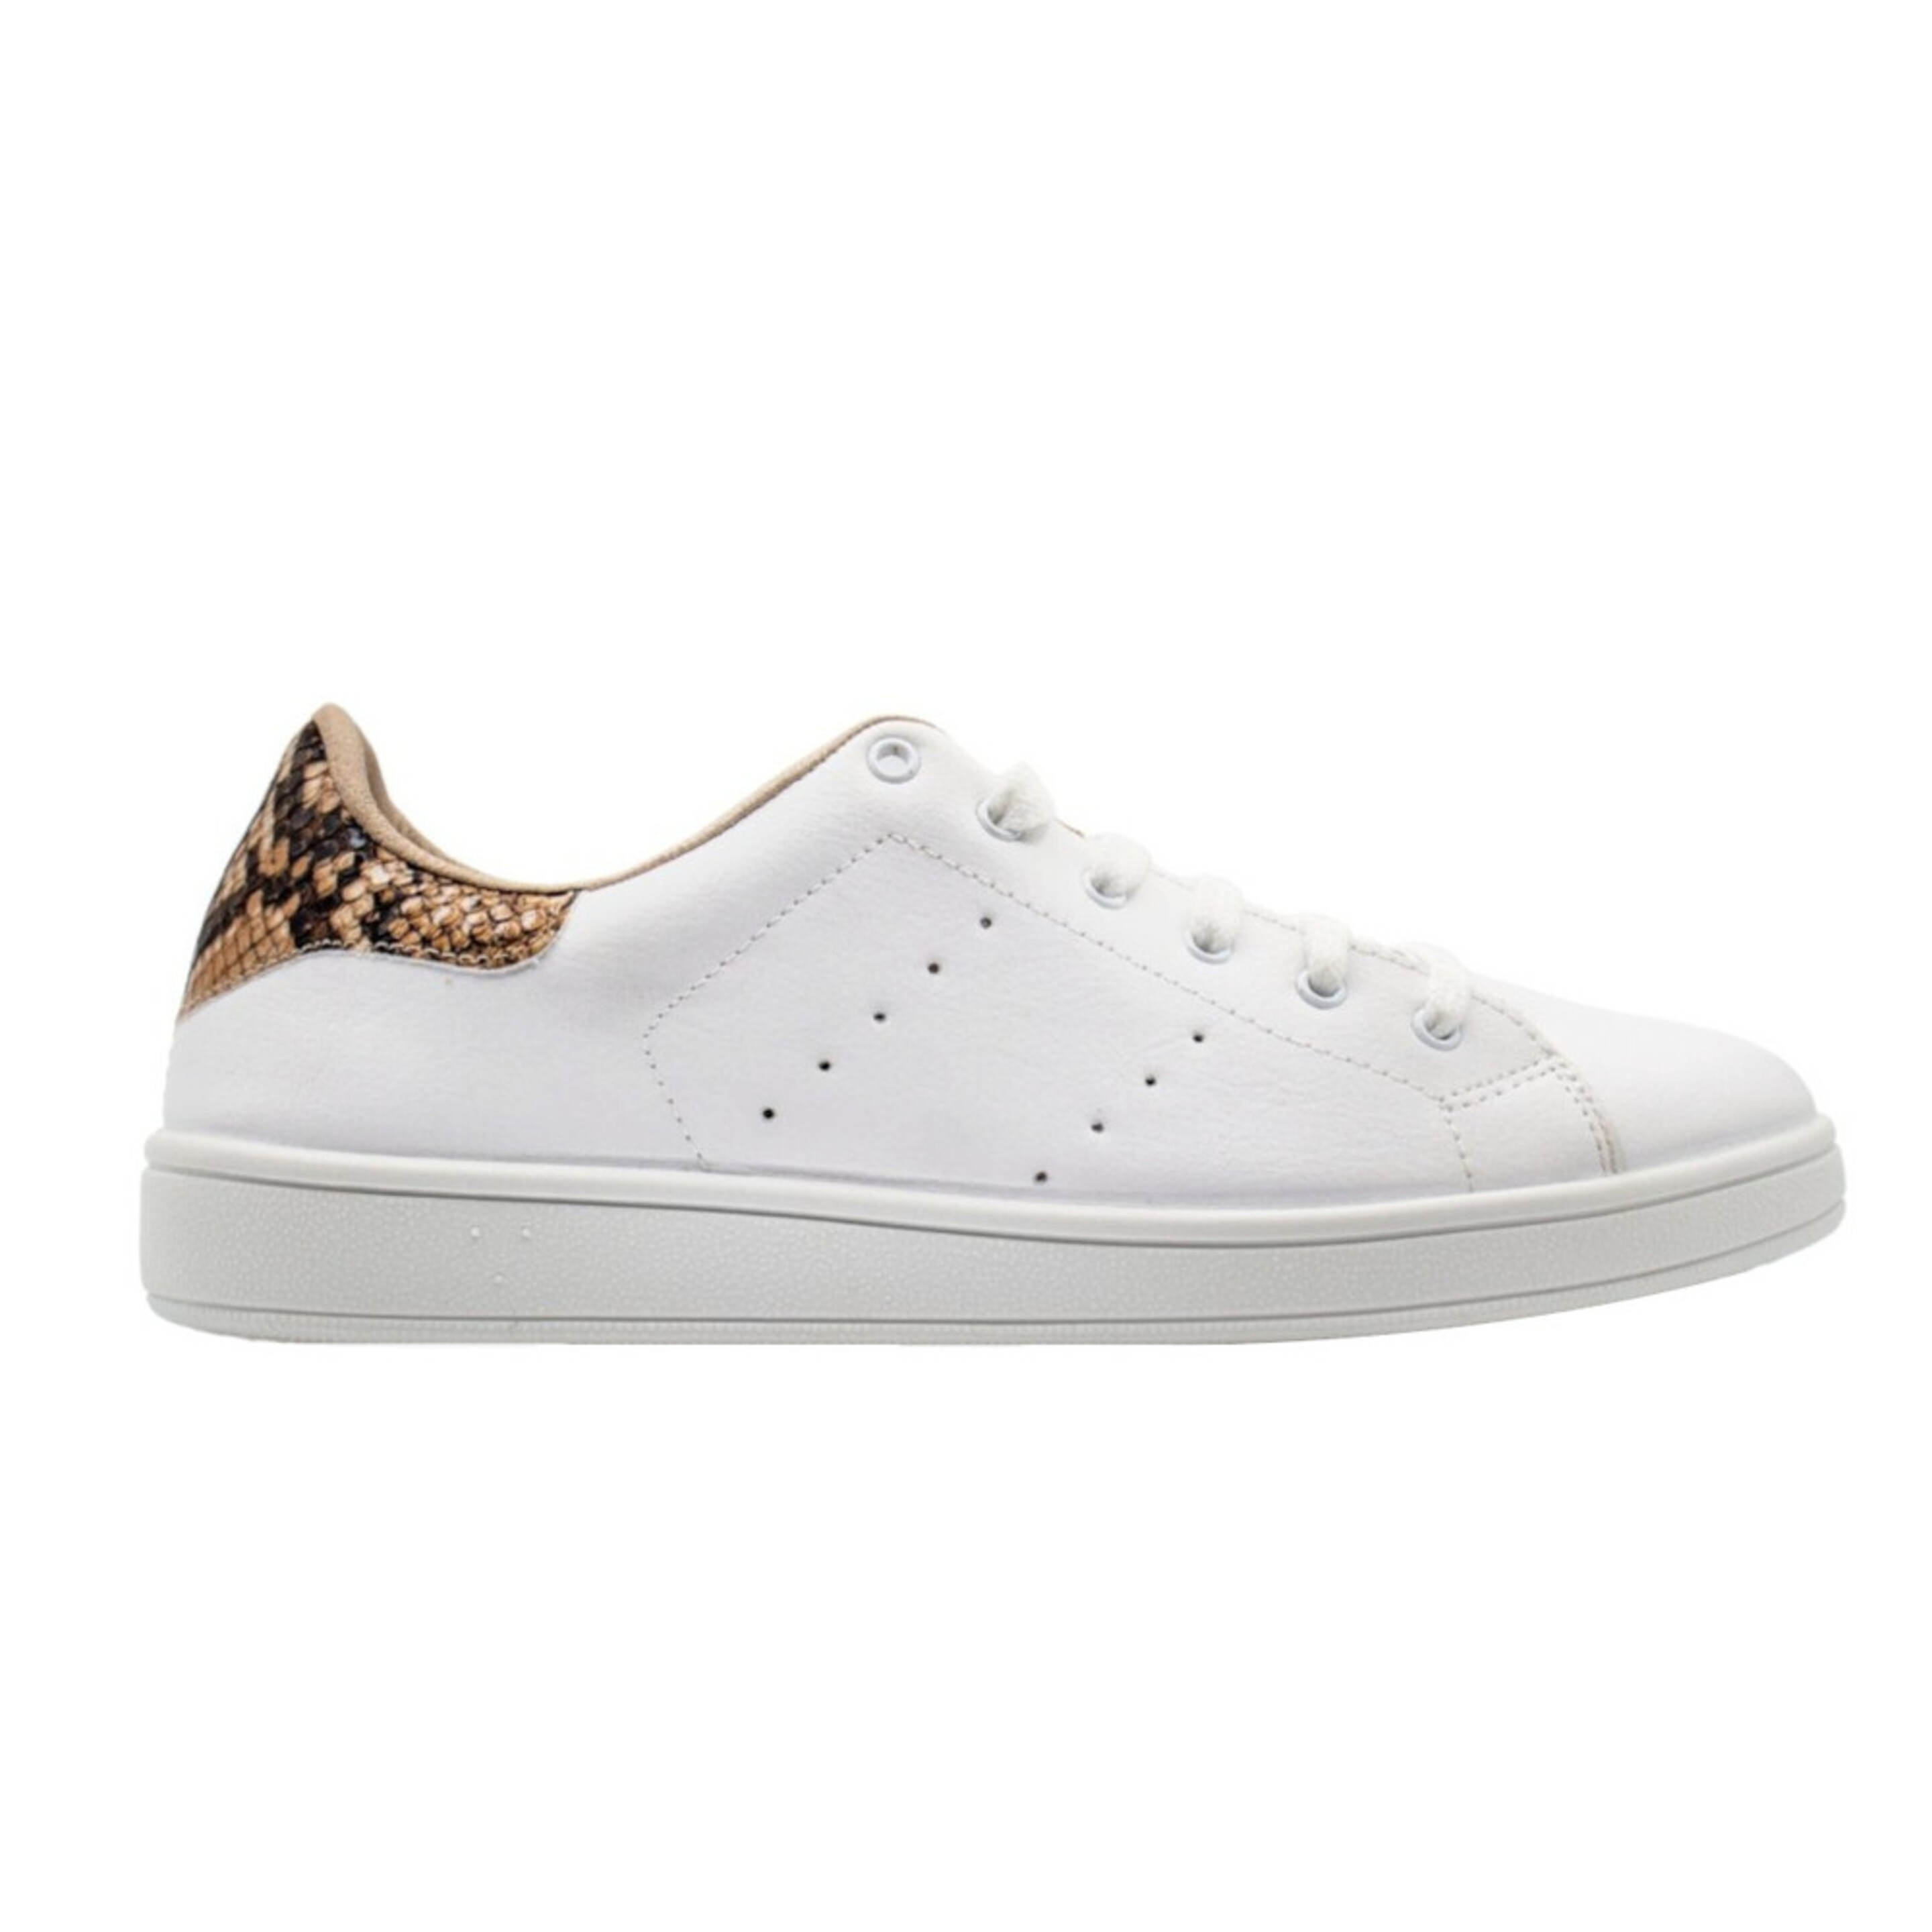 Sneaker Owlet Shoes Python - blanco-amarillo - 